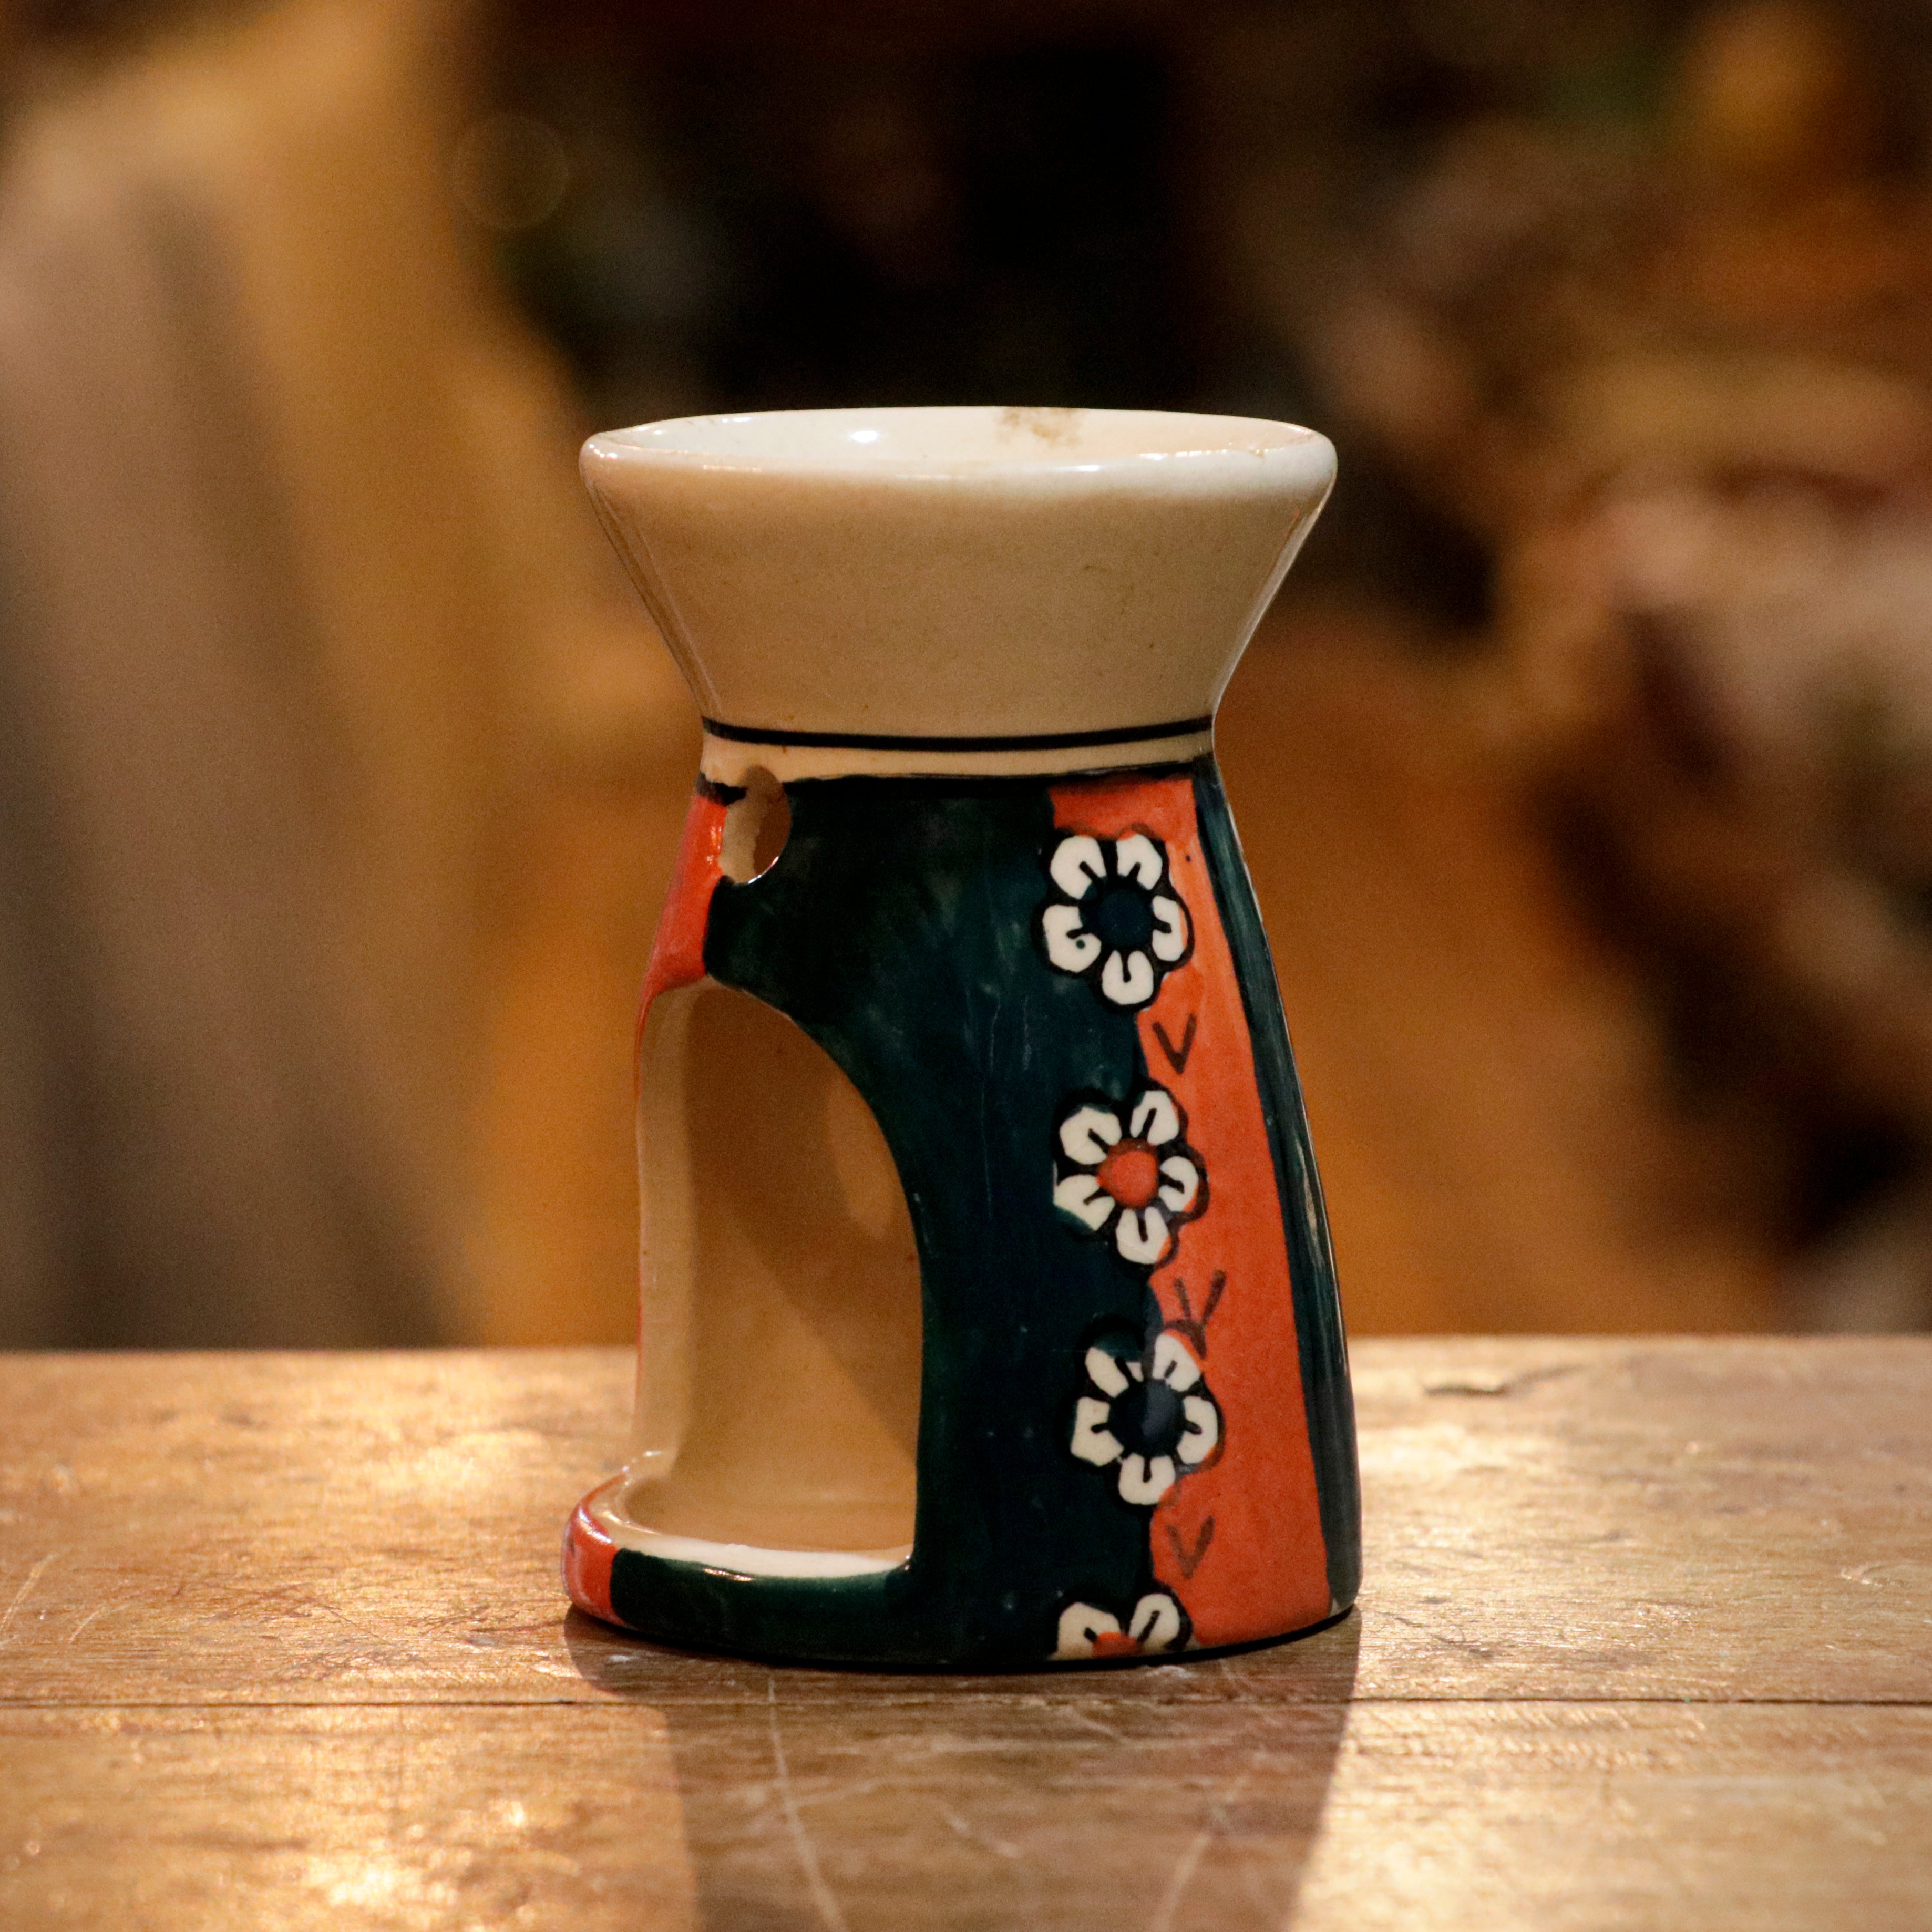 Majestic Rich Flower Designed Ceramic Candle Holder Candle Holder